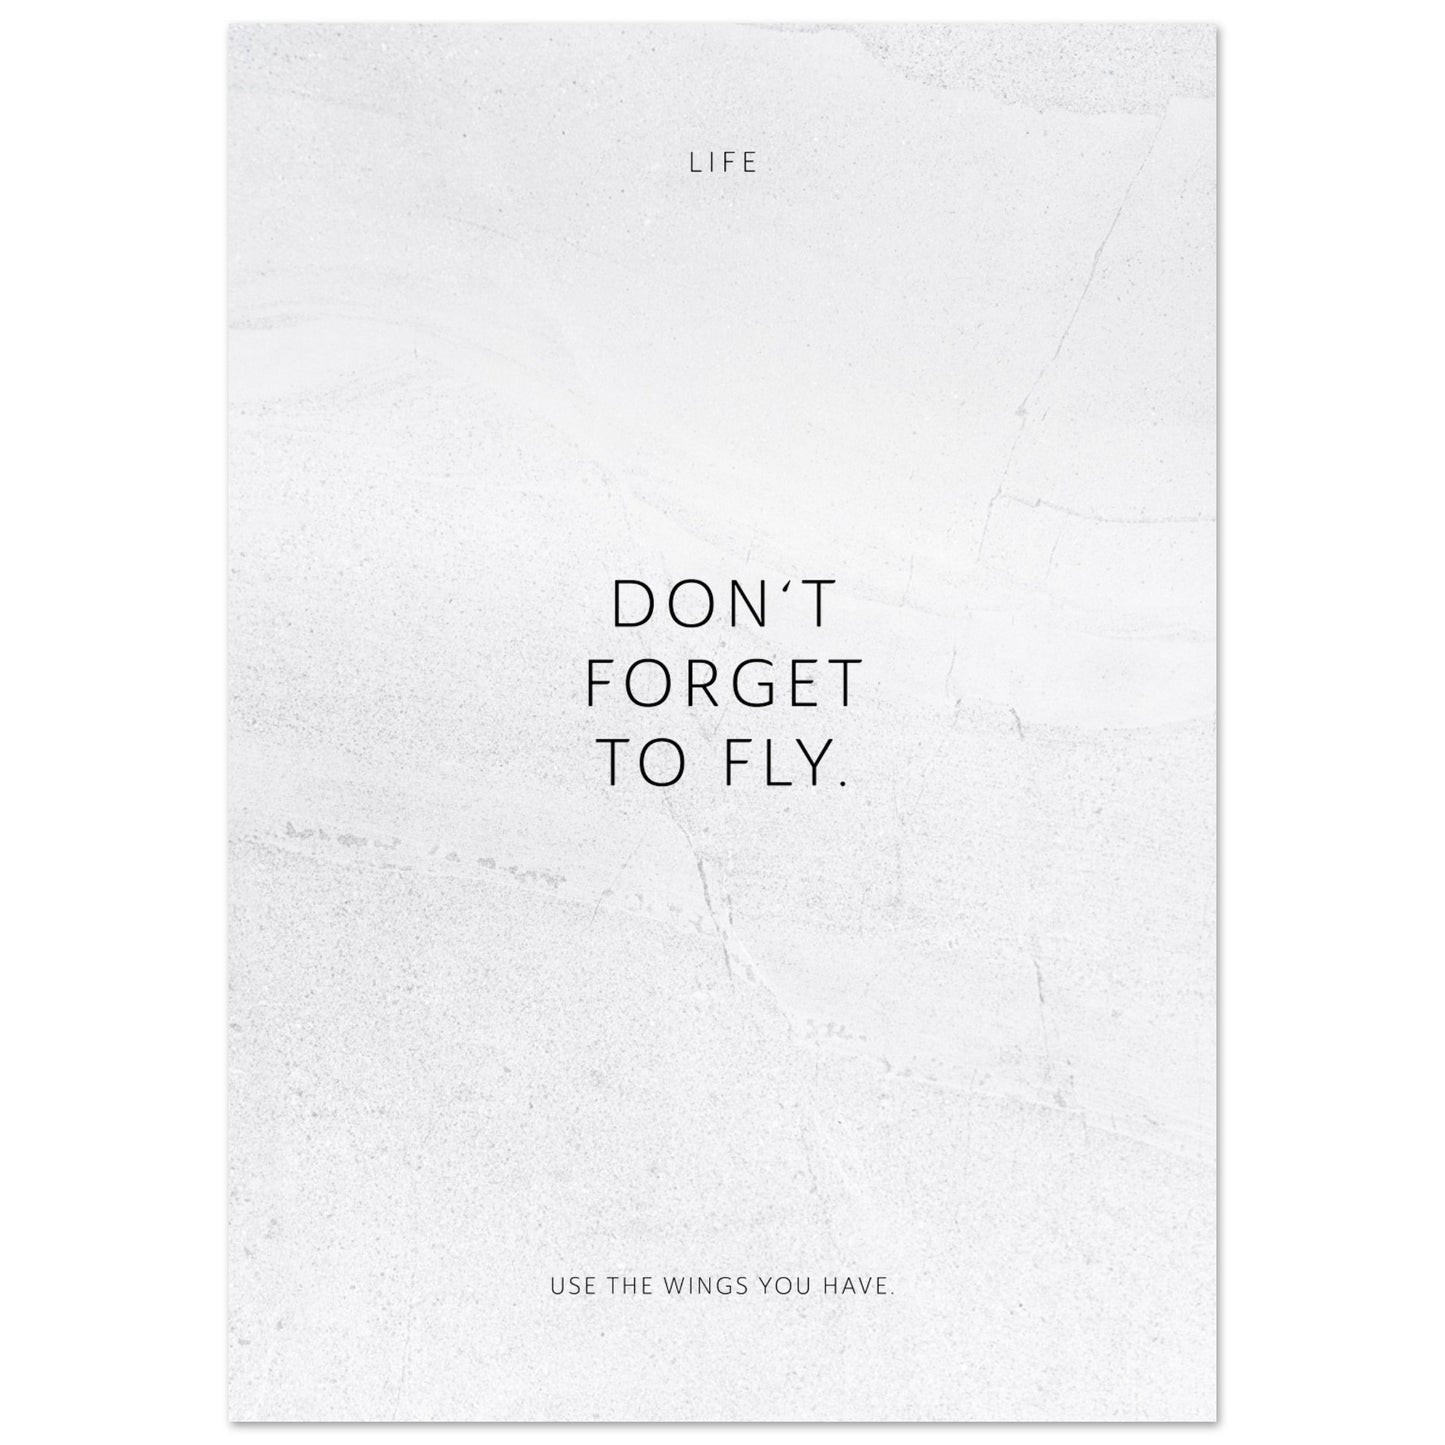 Don‘t forget to fly. – Poster Seidenmatt Weiss in gewellter Steinoptik – ohne Rahmen